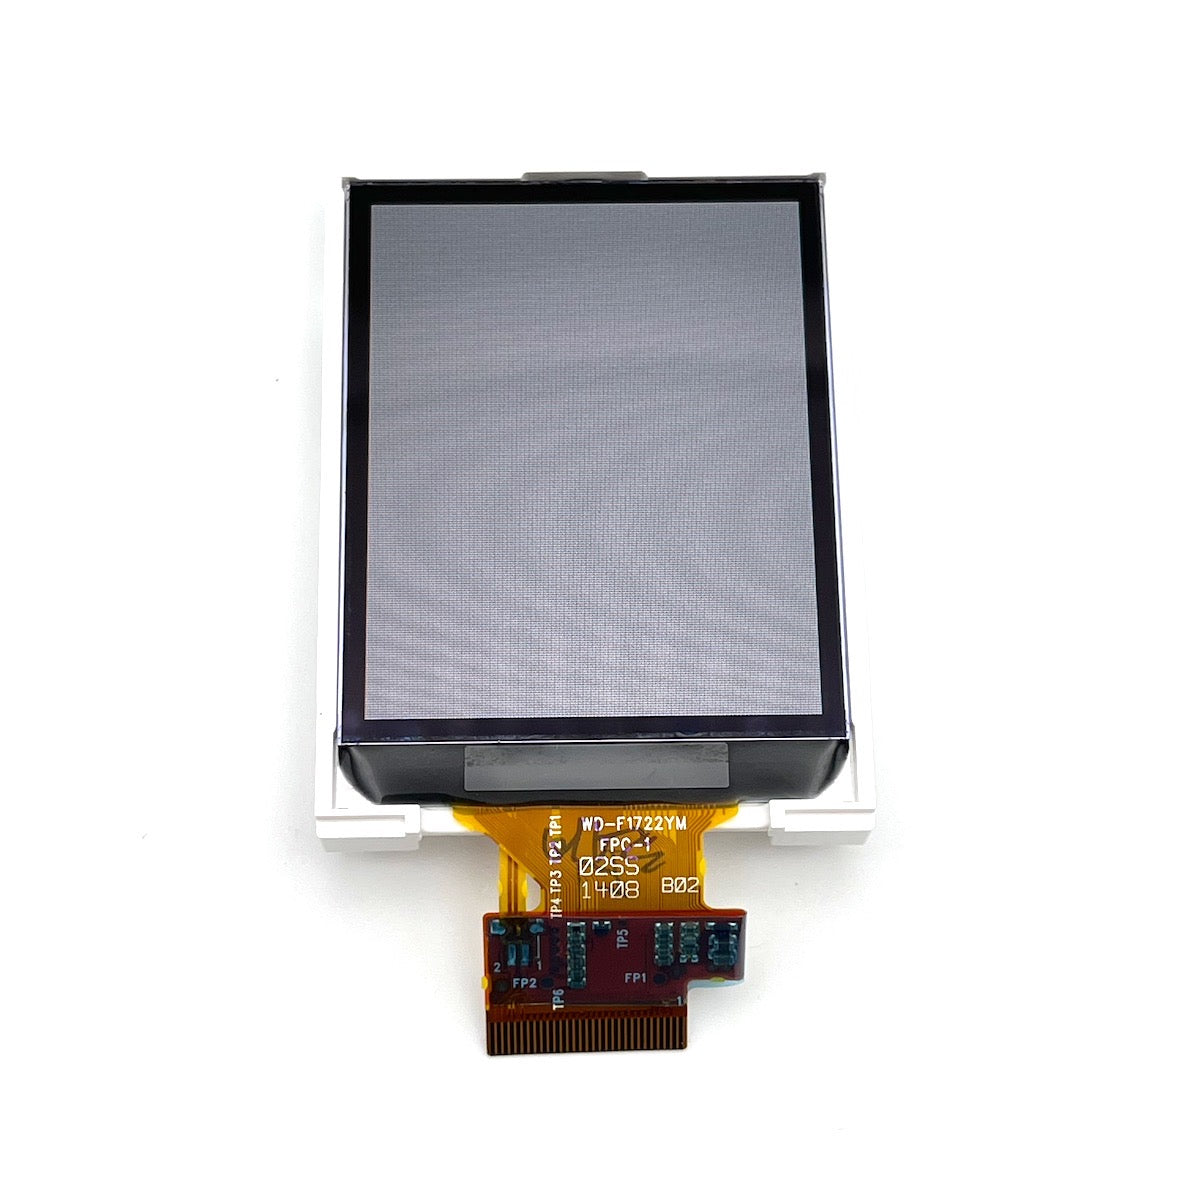 LCD for Garmin eTrex 30 WD-F1722YM-6FLW New